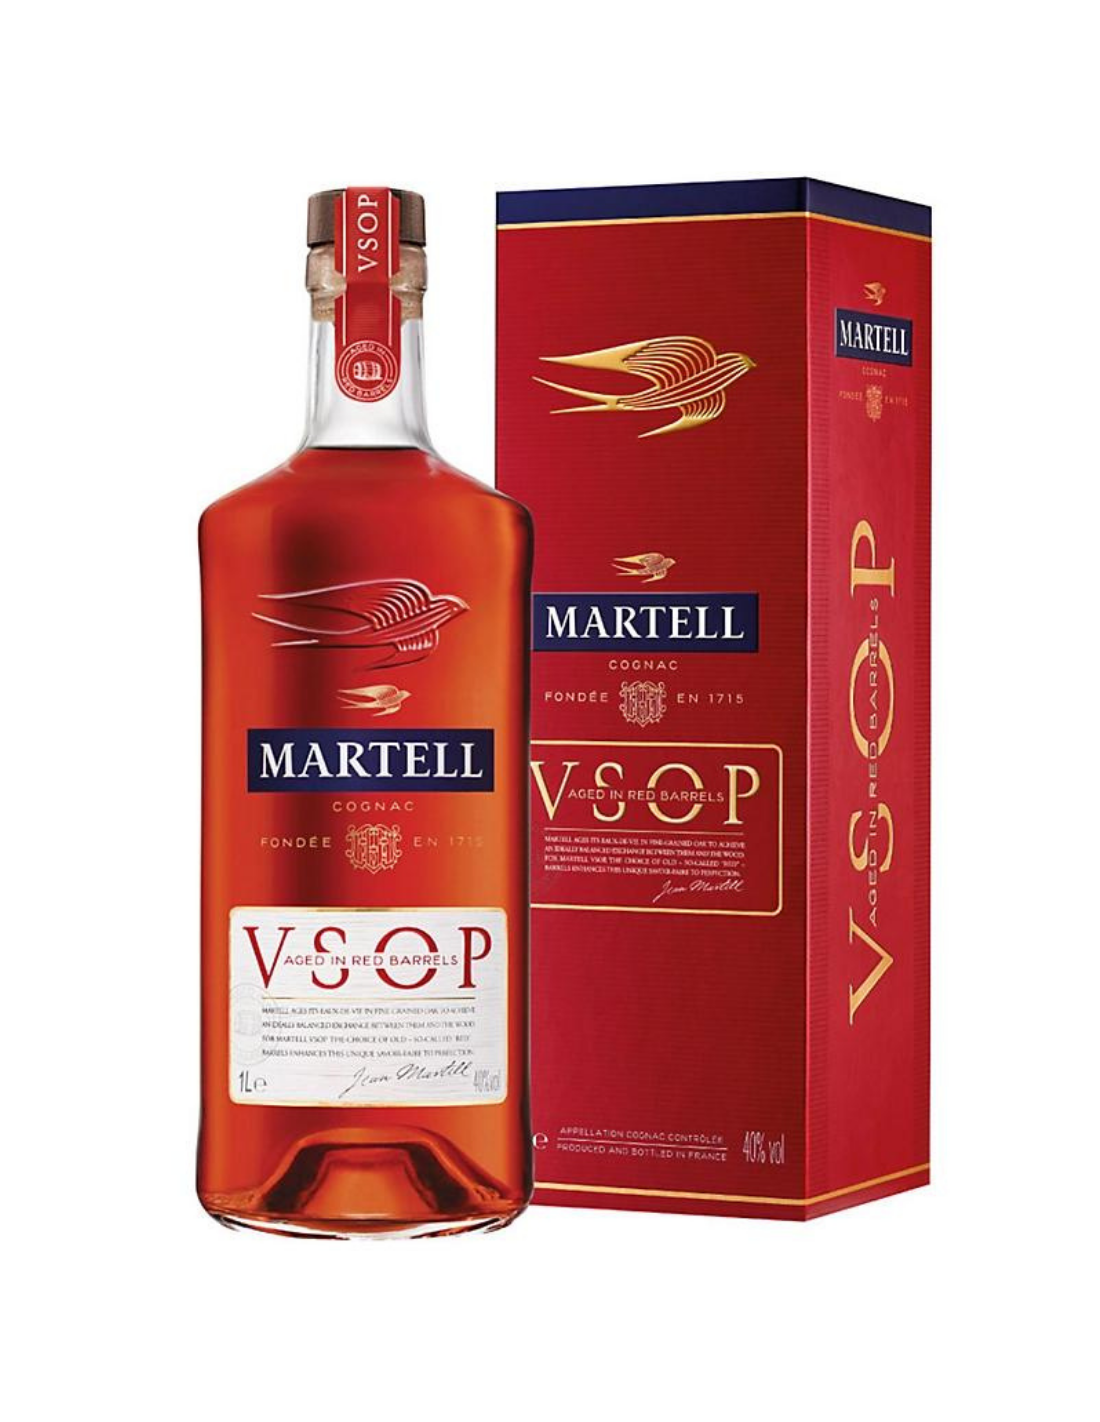 Coniac Martell VSOP + cutie, 40% alc., 0.7L, Franta alcooldiscount.ro